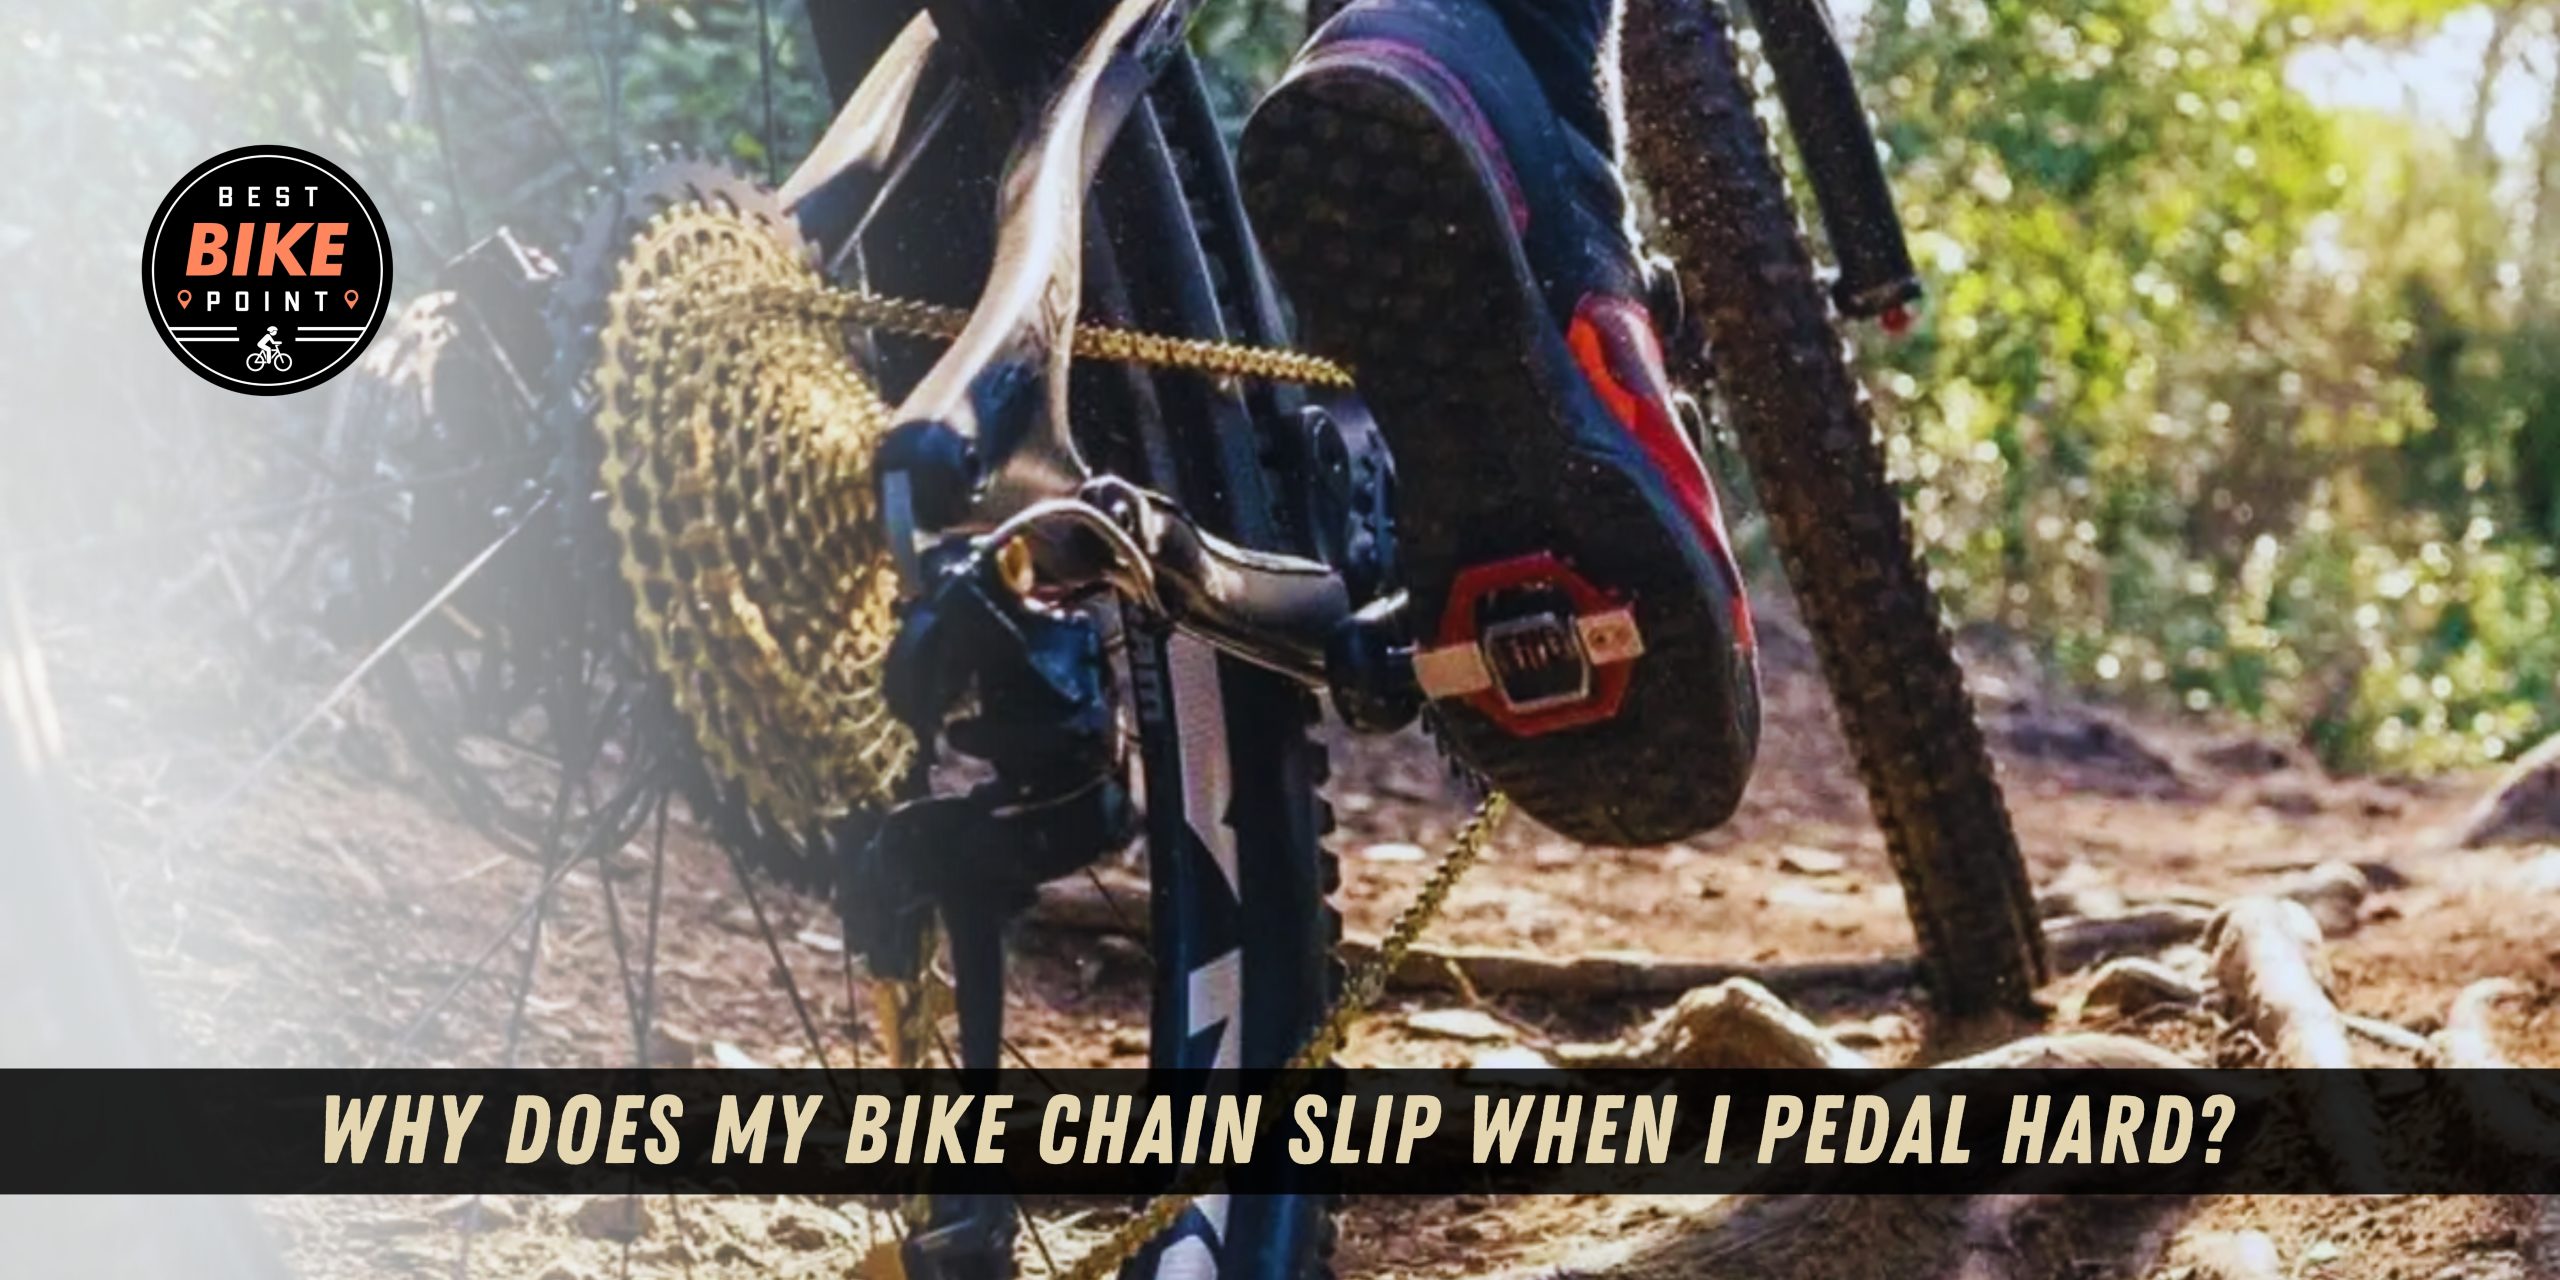 Why Does My Bike Chain Slip?